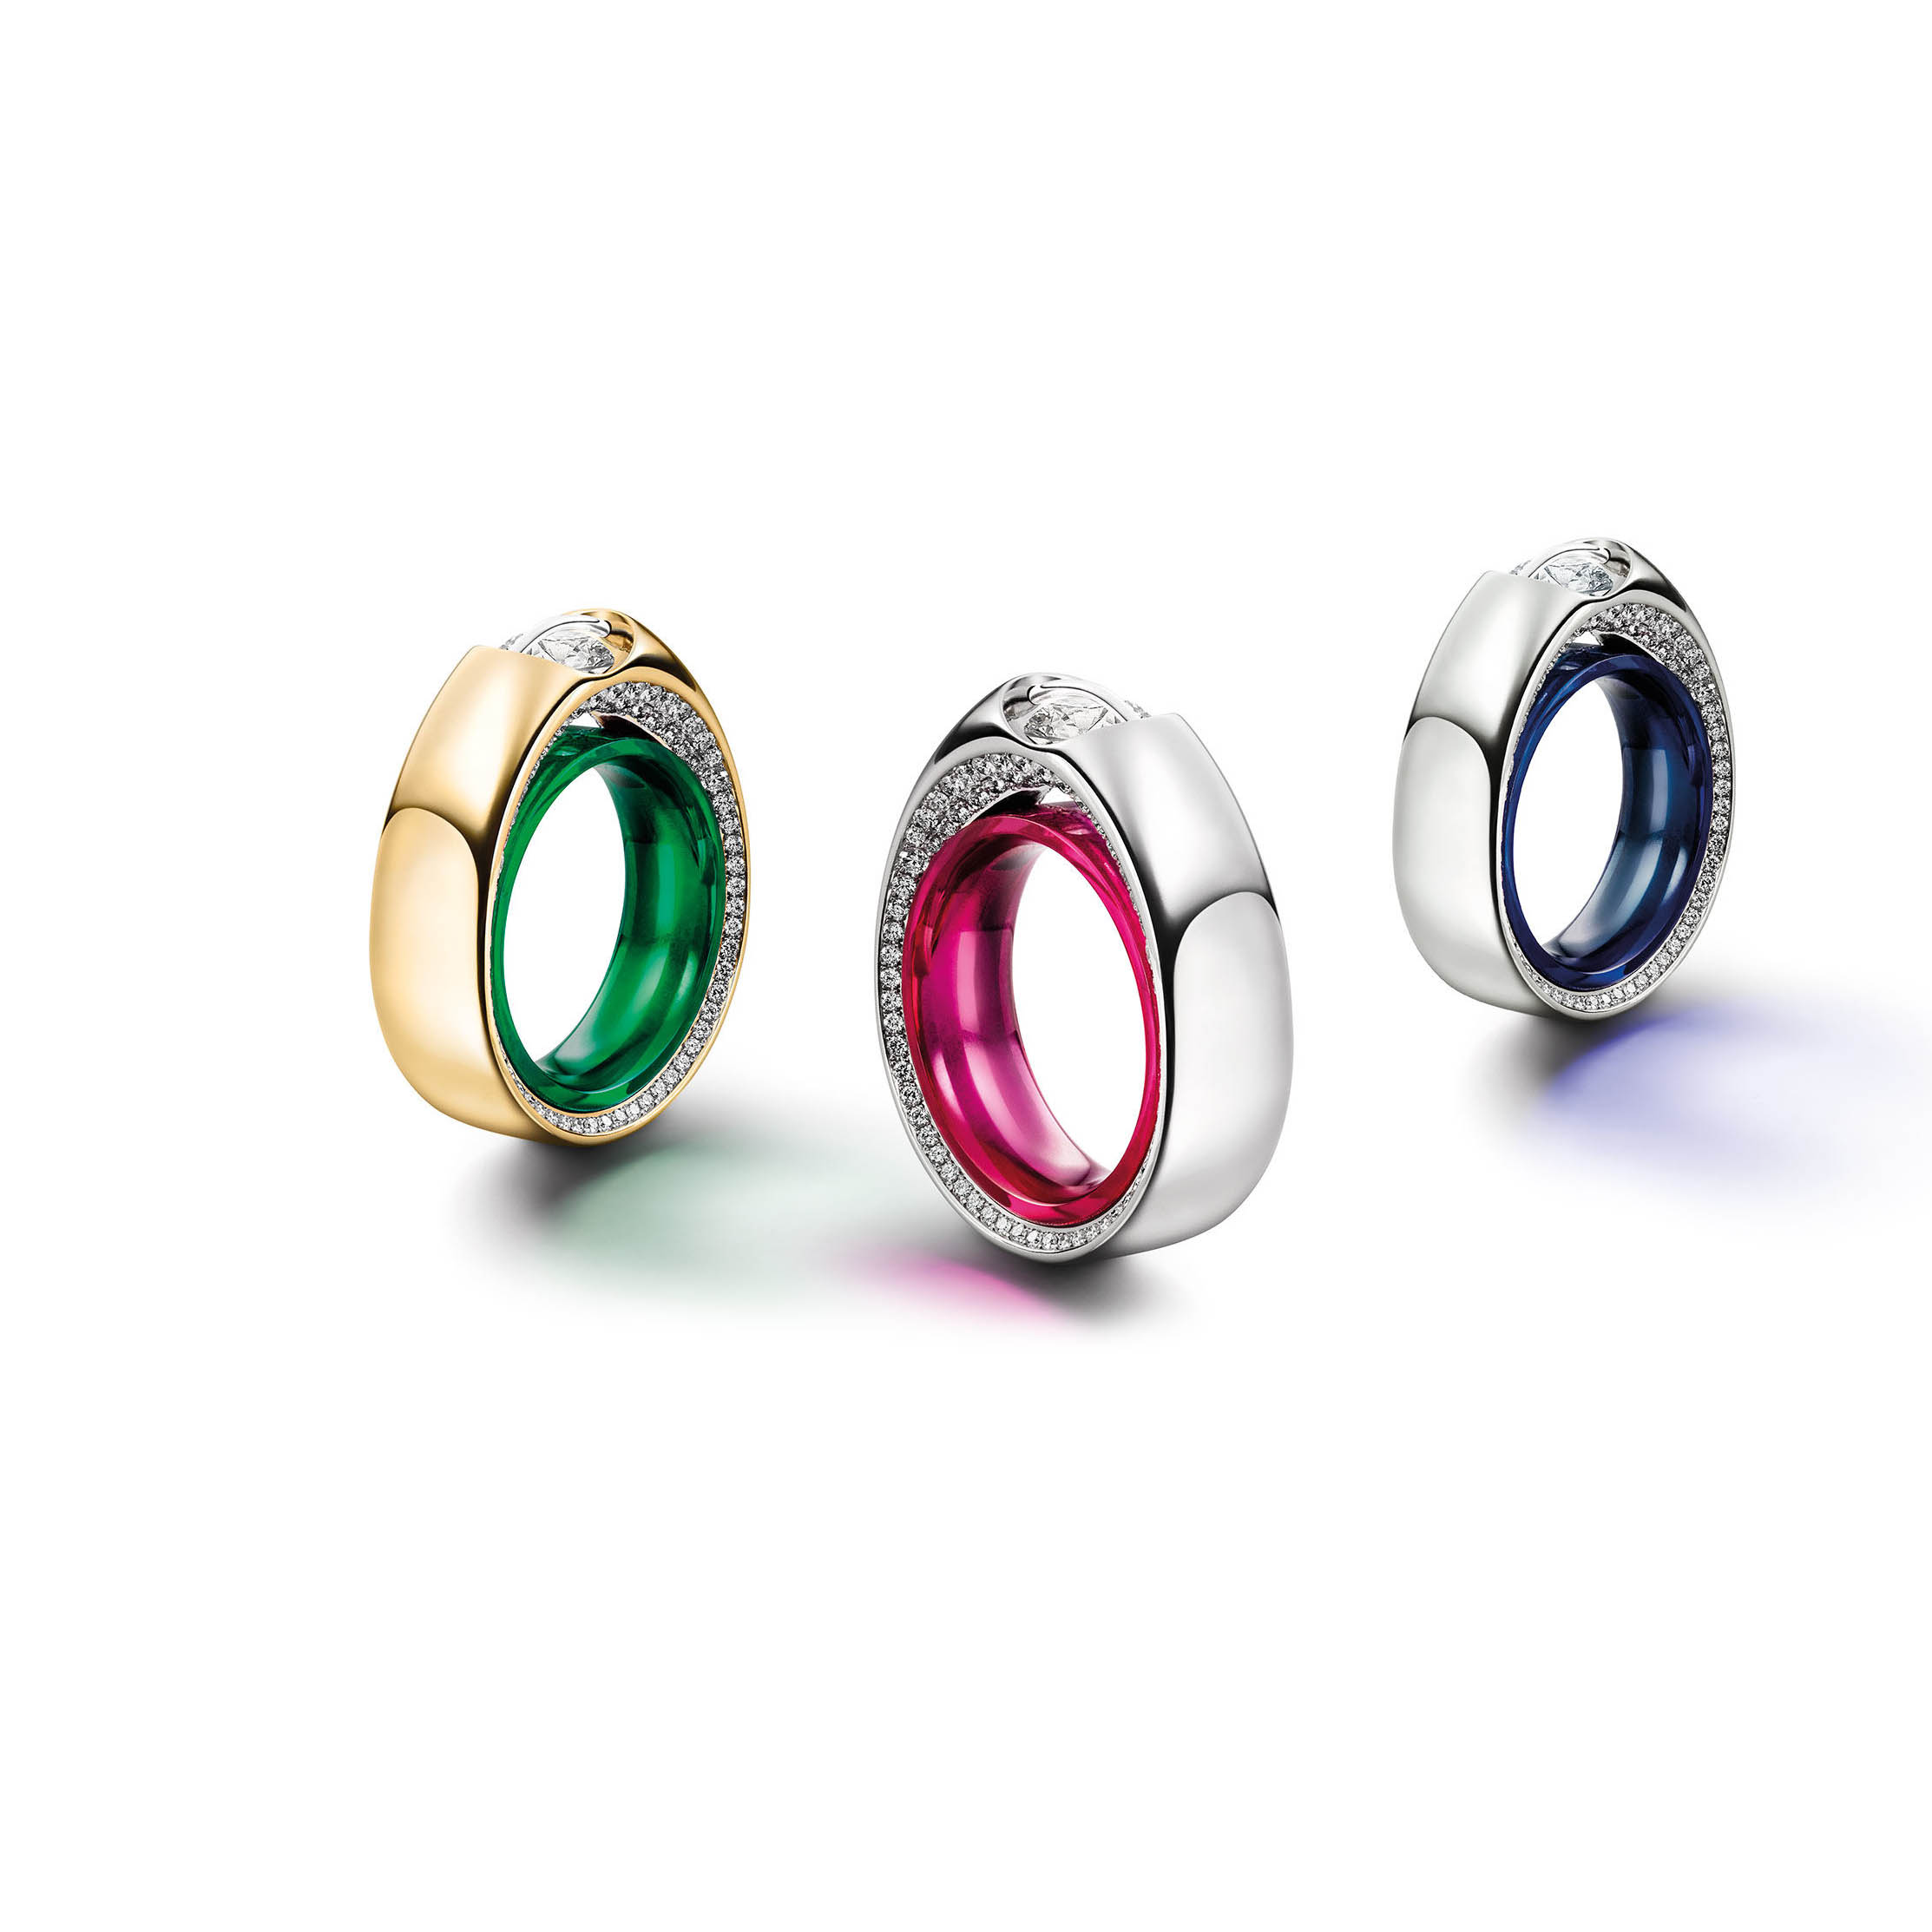 Groothandel OEM / ODM Juweliersware sterling silwer ringe groothandel persoonlike juweliersware vervaardiger